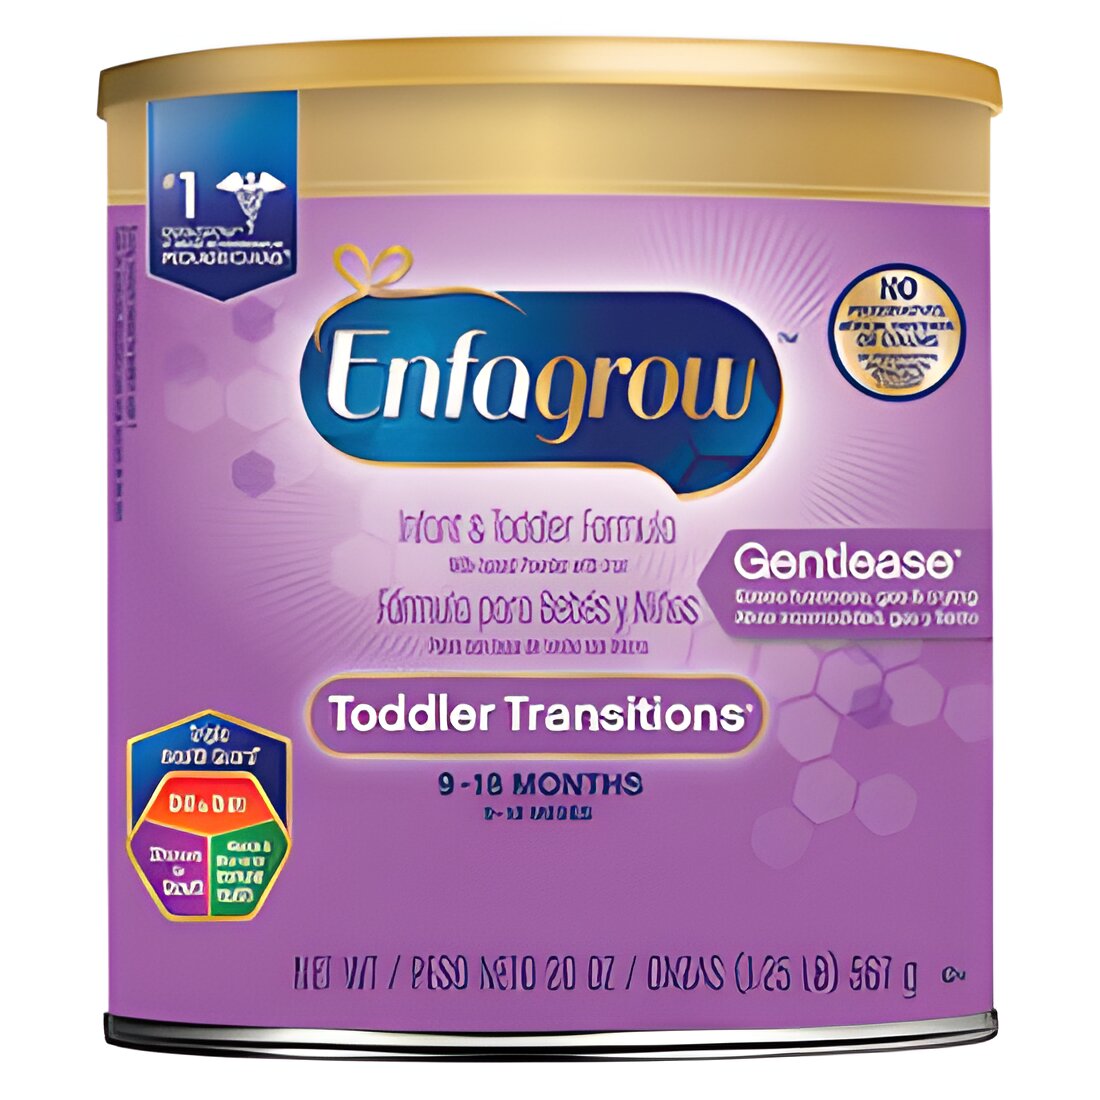 Free Sample of EnfagrowÂ® Toddler Formula